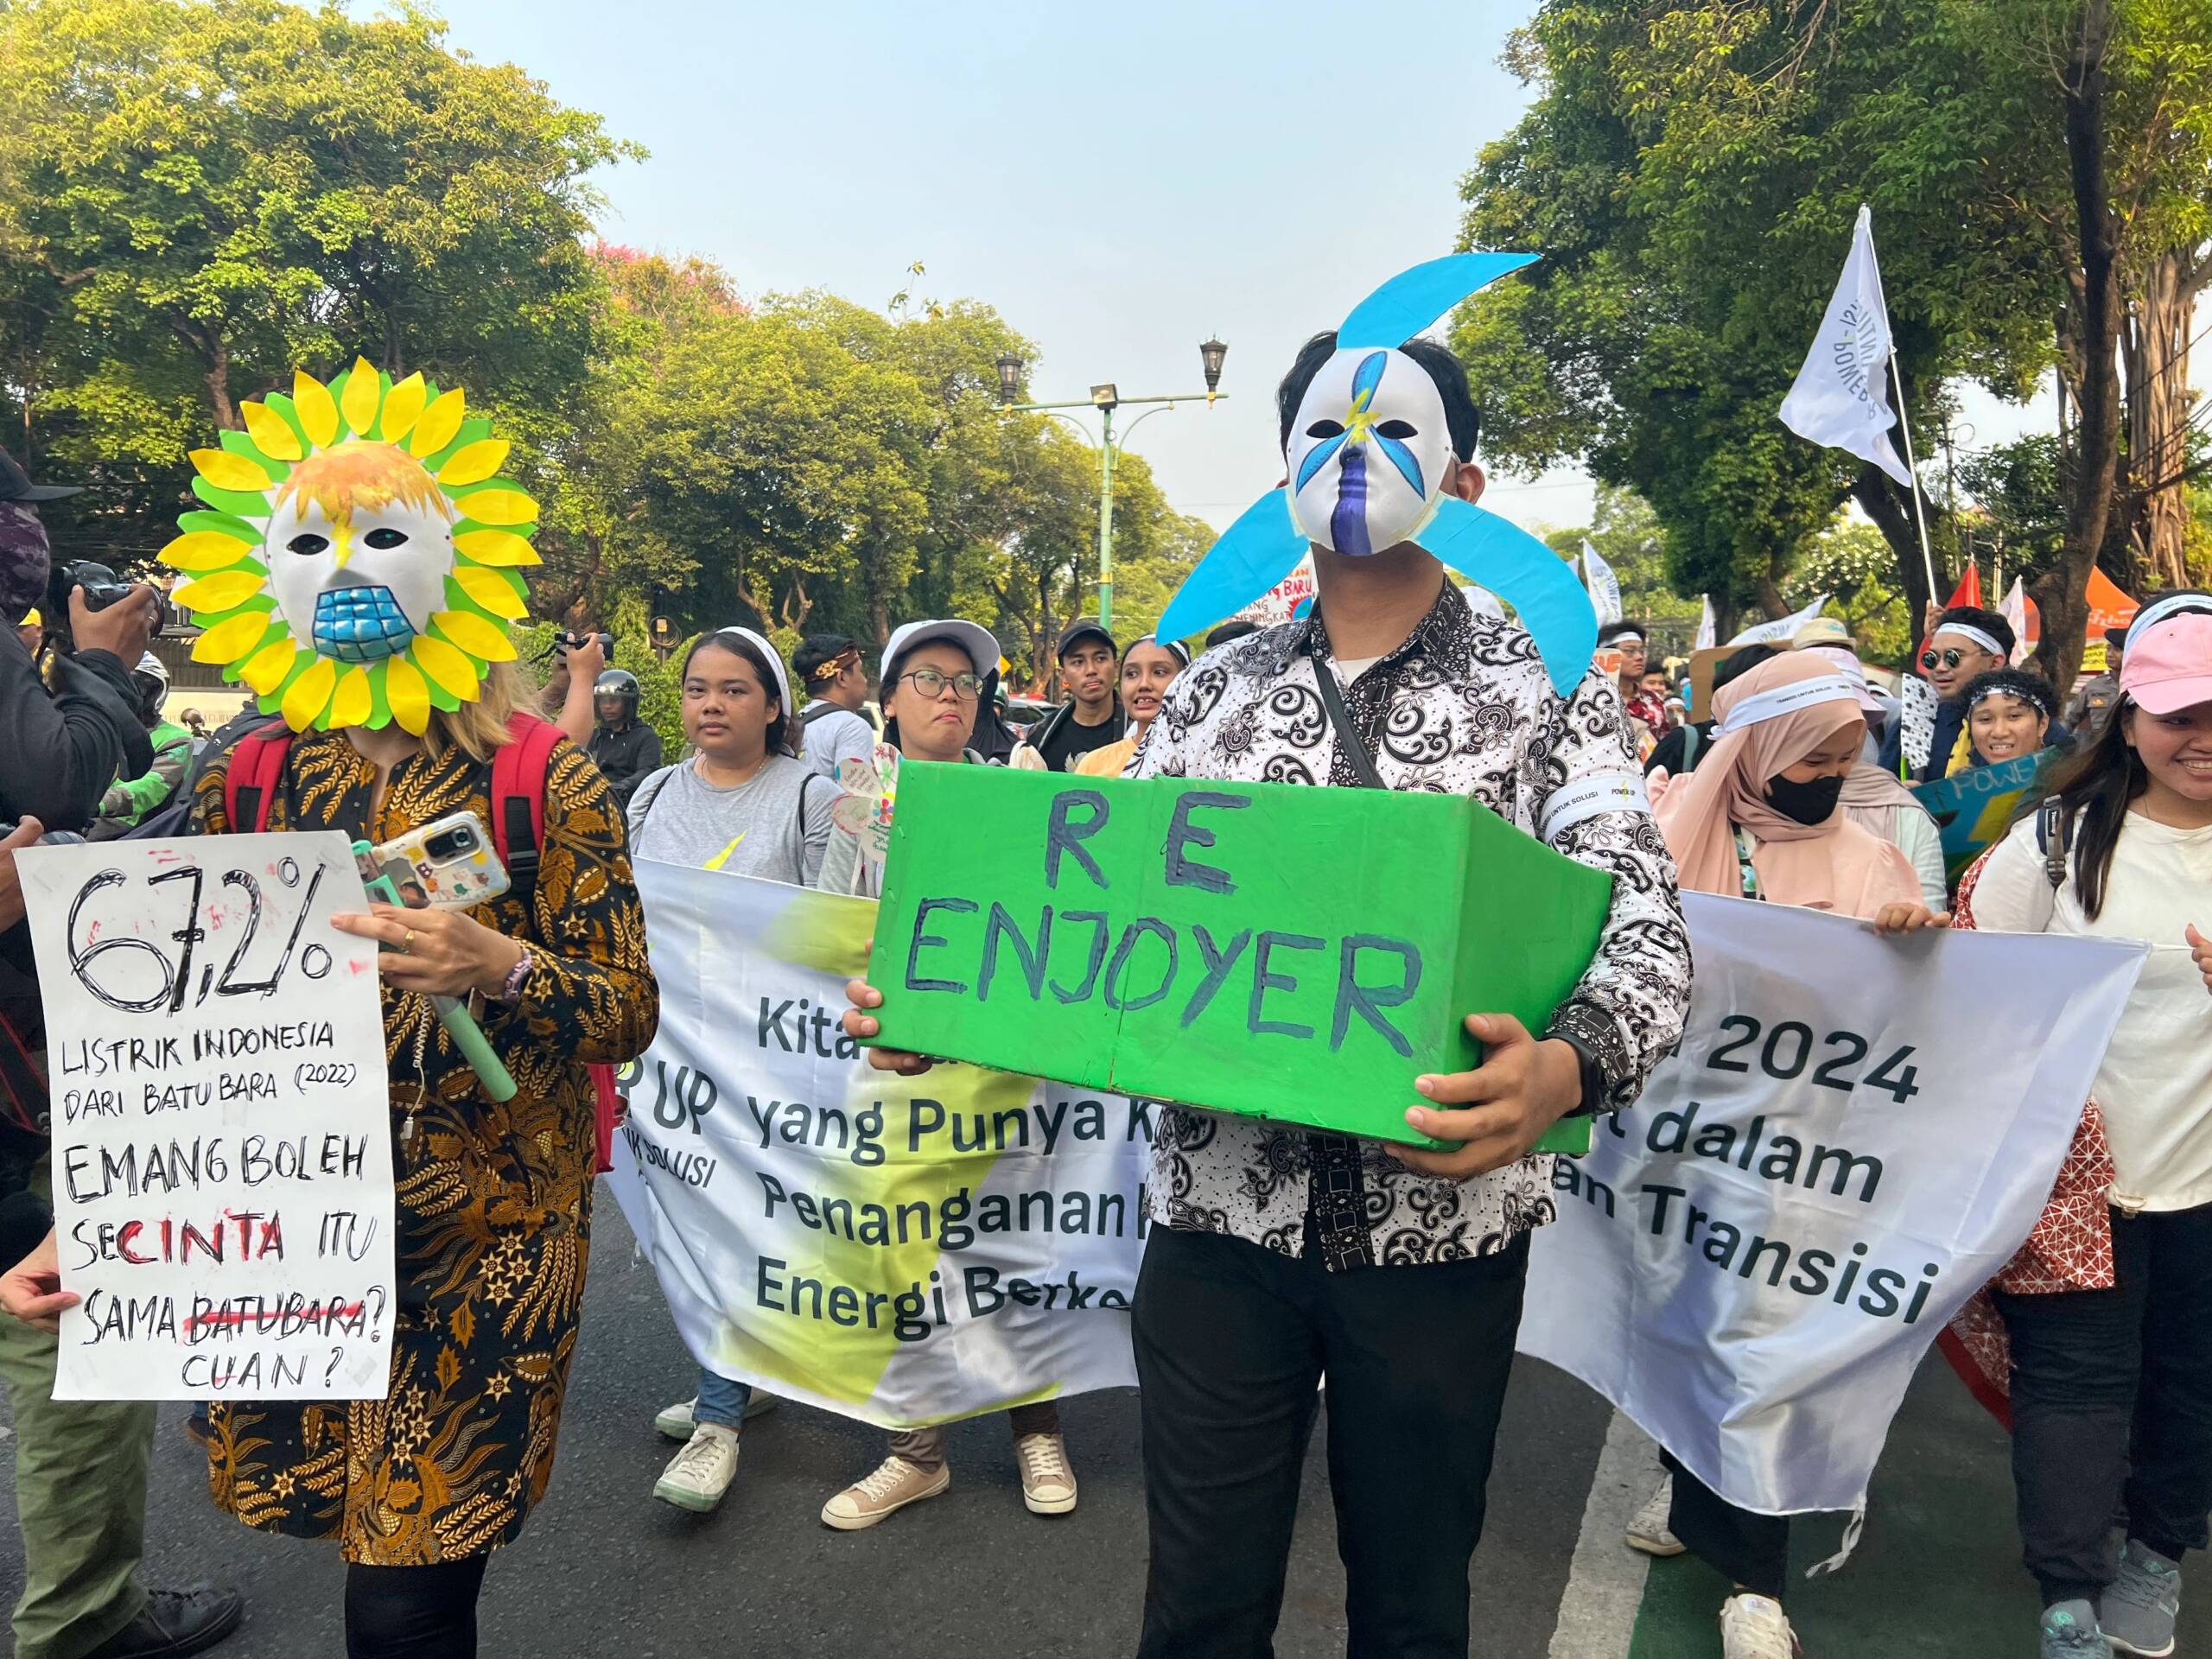 Jakarta, Indonesien, 3.11.: Hunderte rufen mögliche Präsidentschaftskandidaten dazu auf, Umweltthemen und eine gerechte Energiewende im anstehenden Wahlkampf zu priorisieren. Bildnachweis: Kathleen Lei Limayo